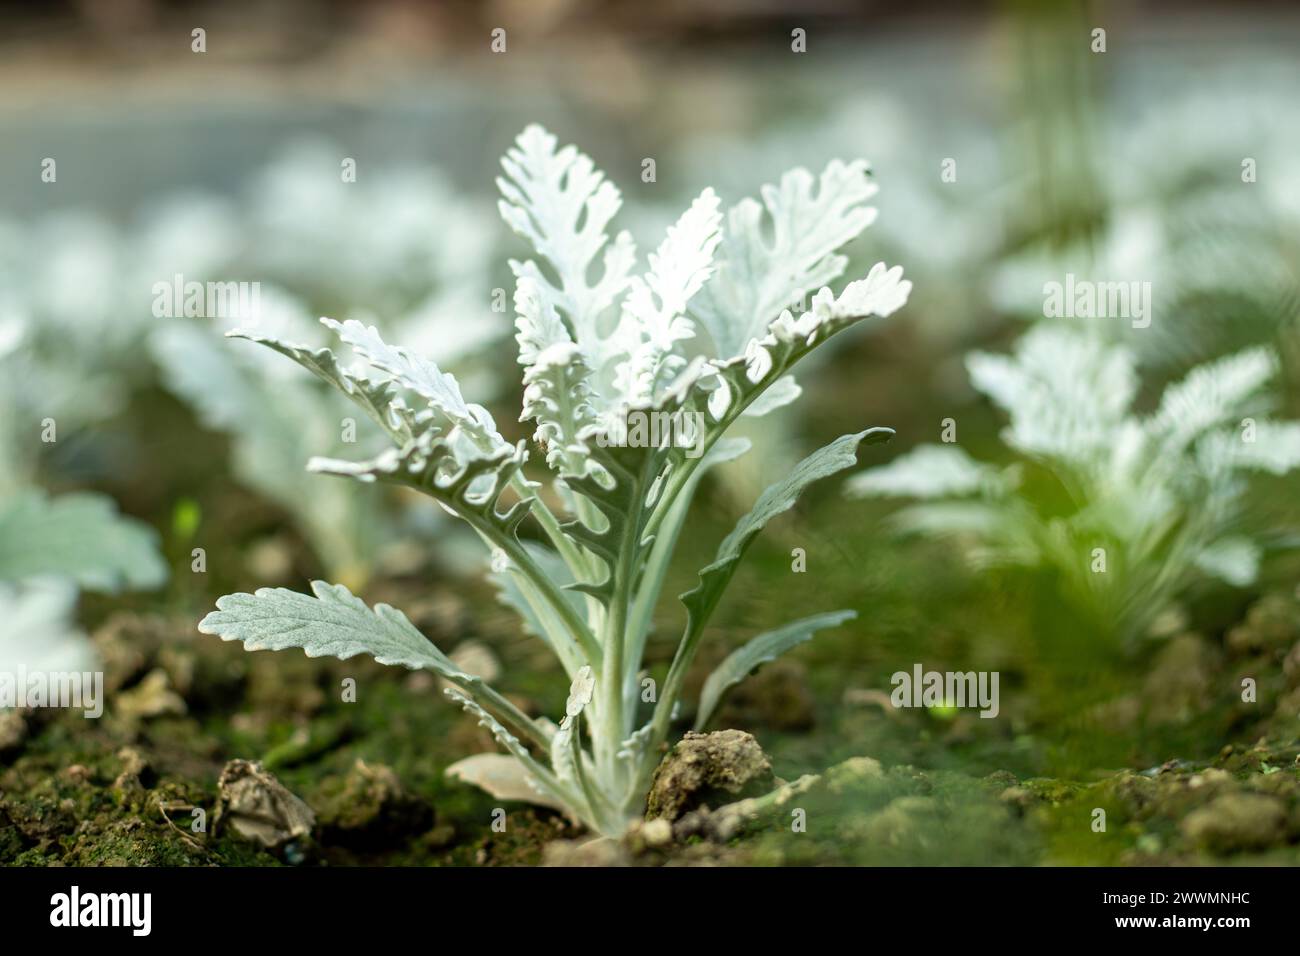 Cineraria Maritima oder Silberkraut, auch bekannt als Silberkraut, ist eine mehrjährige Pflanzenart der Gattung Jacobaea in der Familie Stockfoto